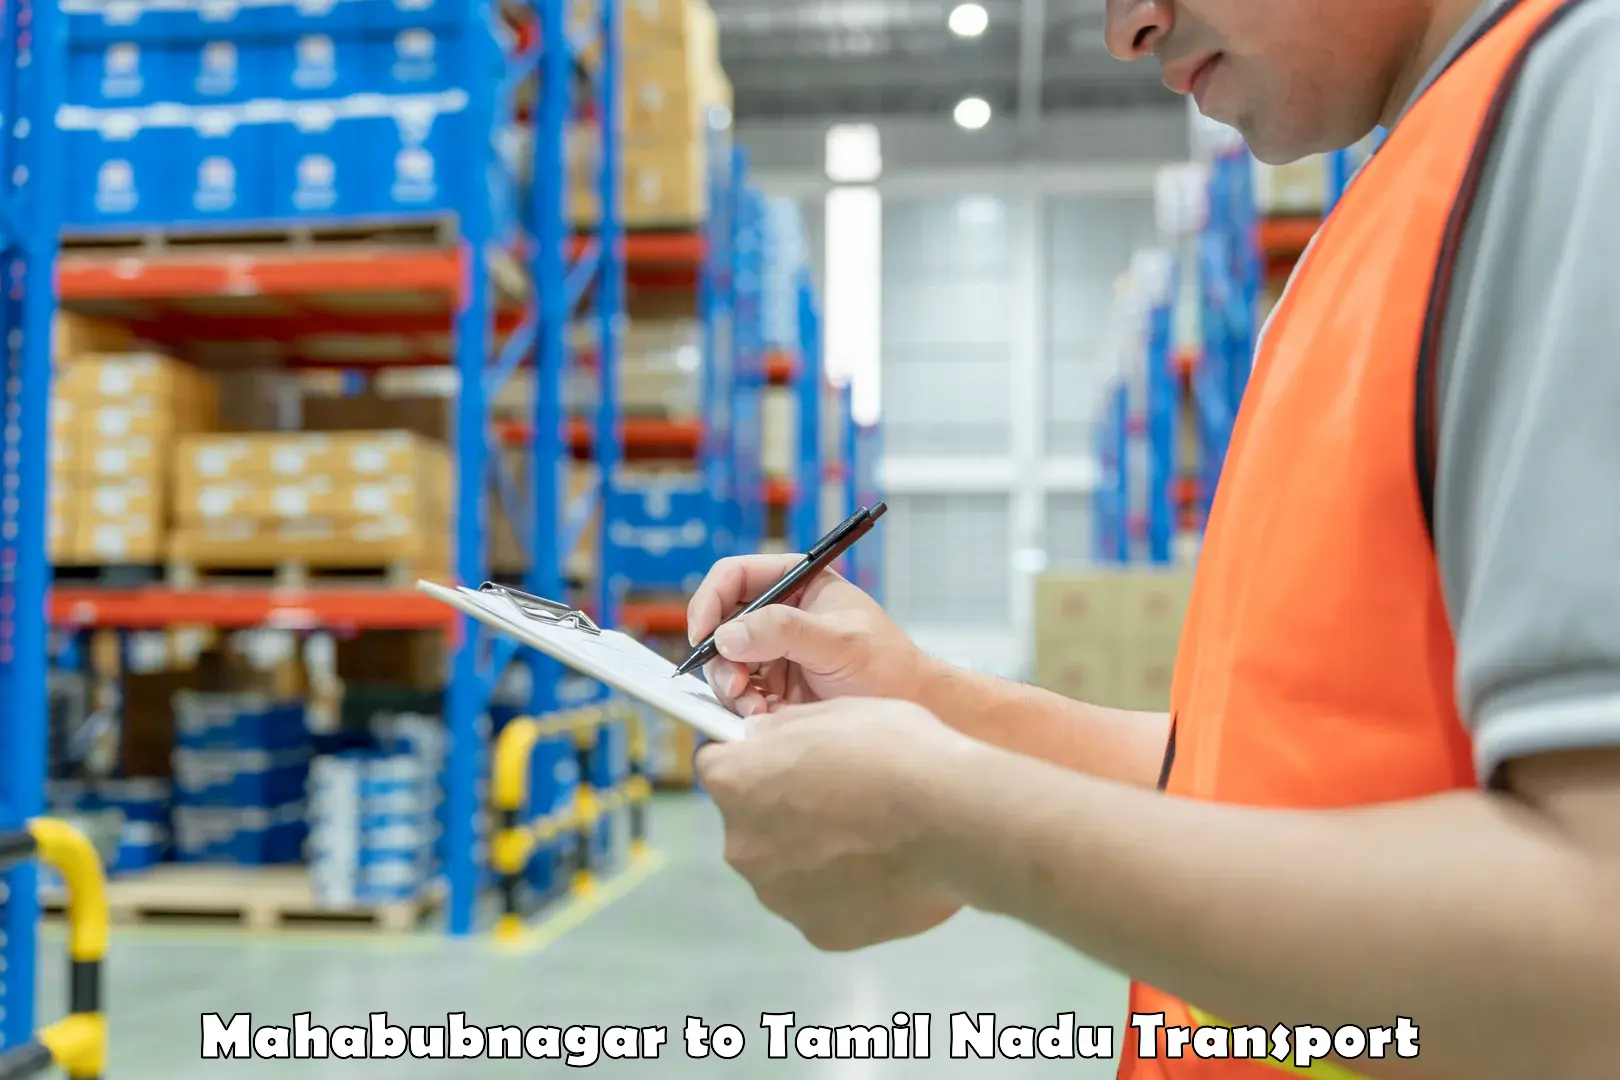 Land transport services Mahabubnagar to Tamil Nadu